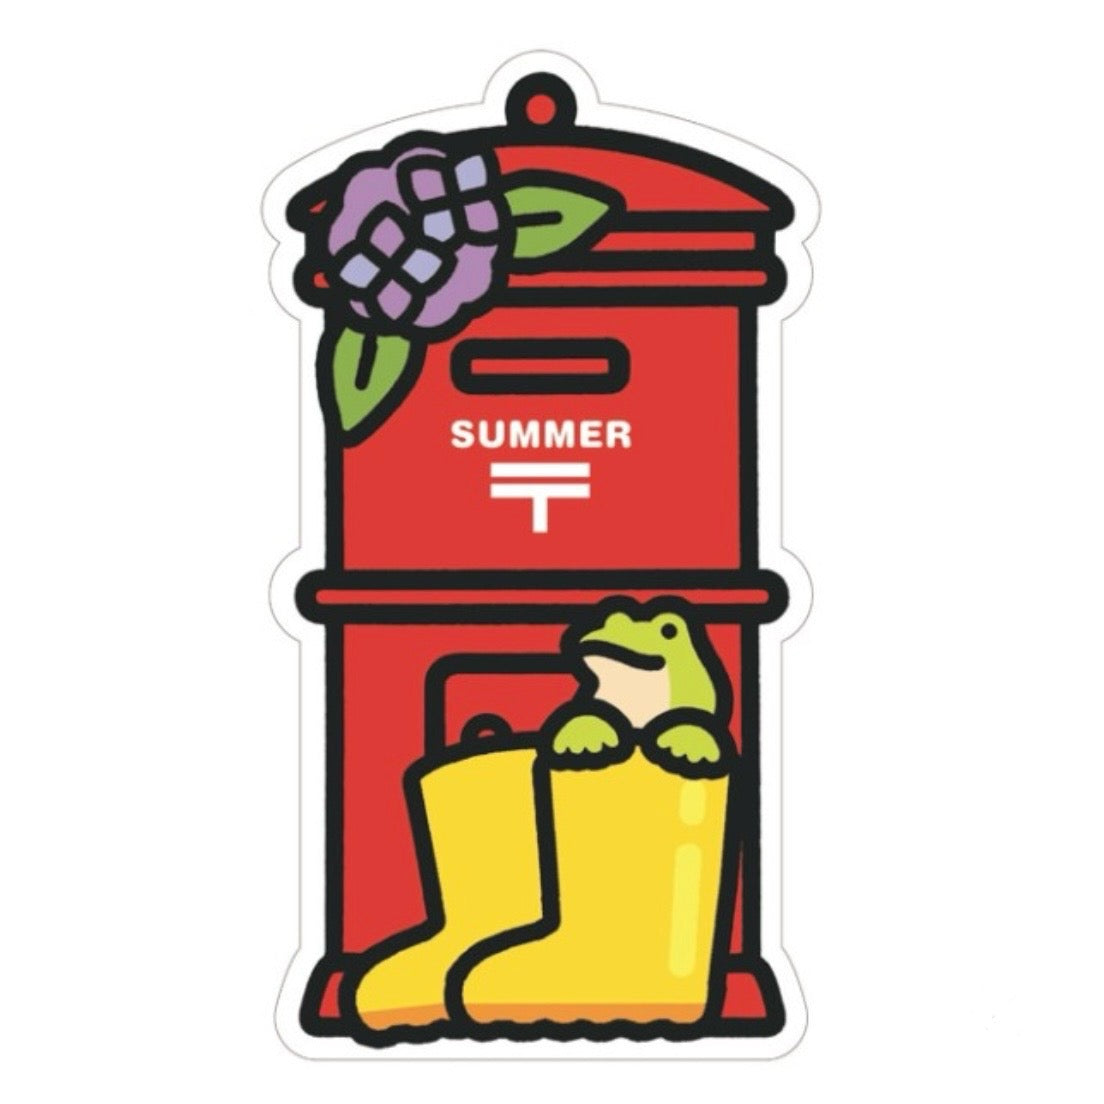 【訂貨】日本郵局限定- 初夏郵筒型明信片